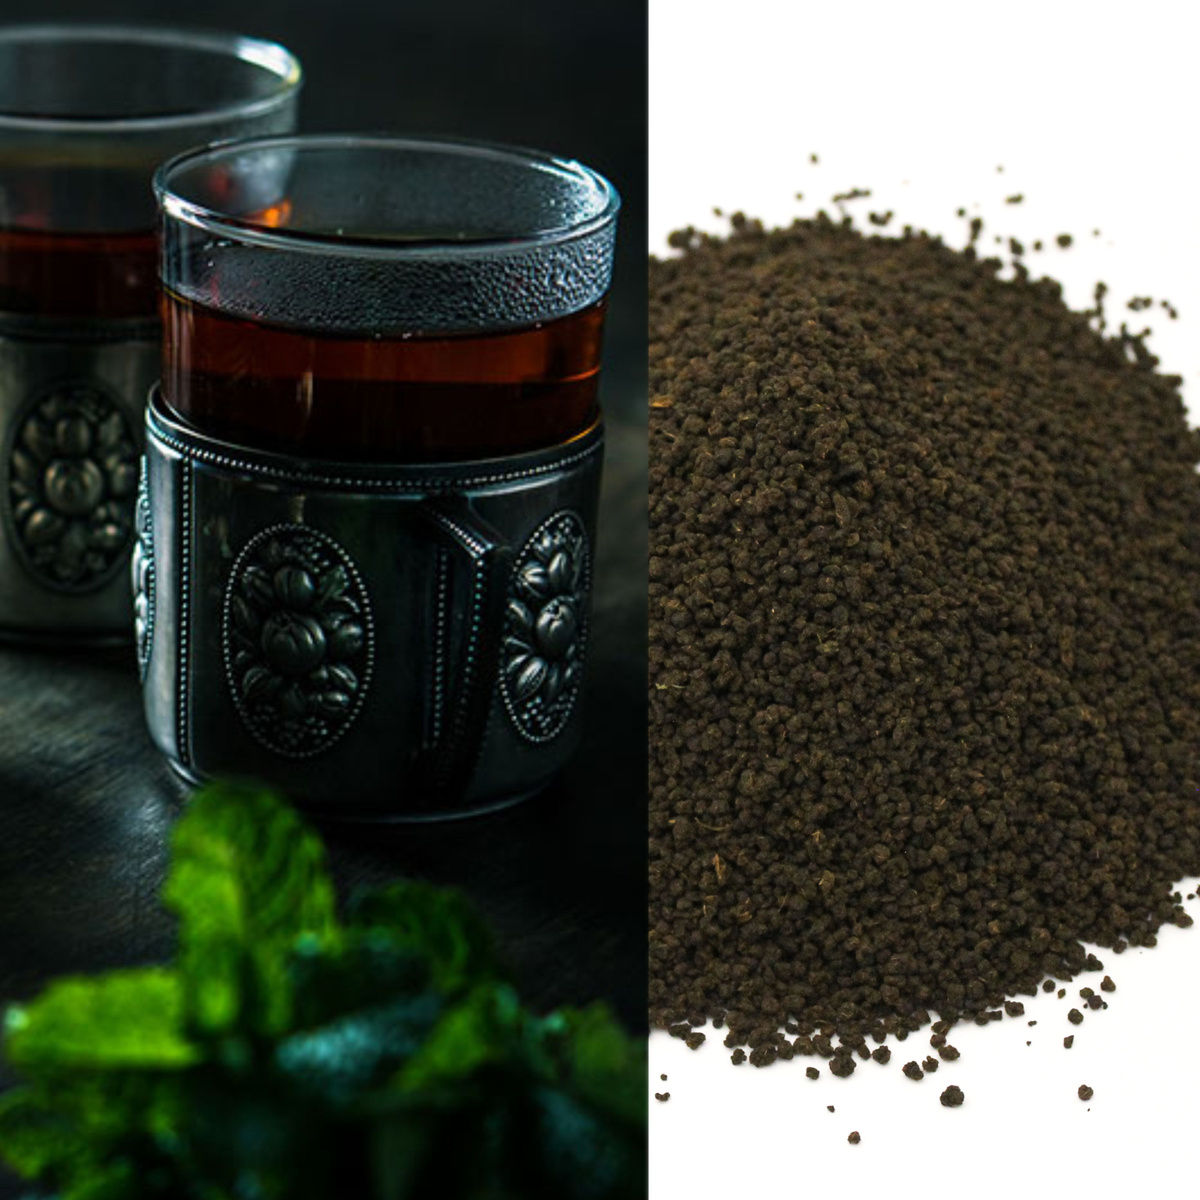 Кенийский черный гранулированный – это сорт чая, который производится в Кении и имеет особую консистенцию в виде мелких гранул. Гранулированная форма чая позволяет сохранить его свежесть и аромат на протяжении длительного времени. Чай Кениан Коллекшн представляет собой достаточно терпкий и крепкий напиток с ярким и насыщенным цветом. Неповторимый аромат и насыщенный вкус,  воплощают в себе подлинную утонченность чая. Хорош как сам по себе, так и с молоком.